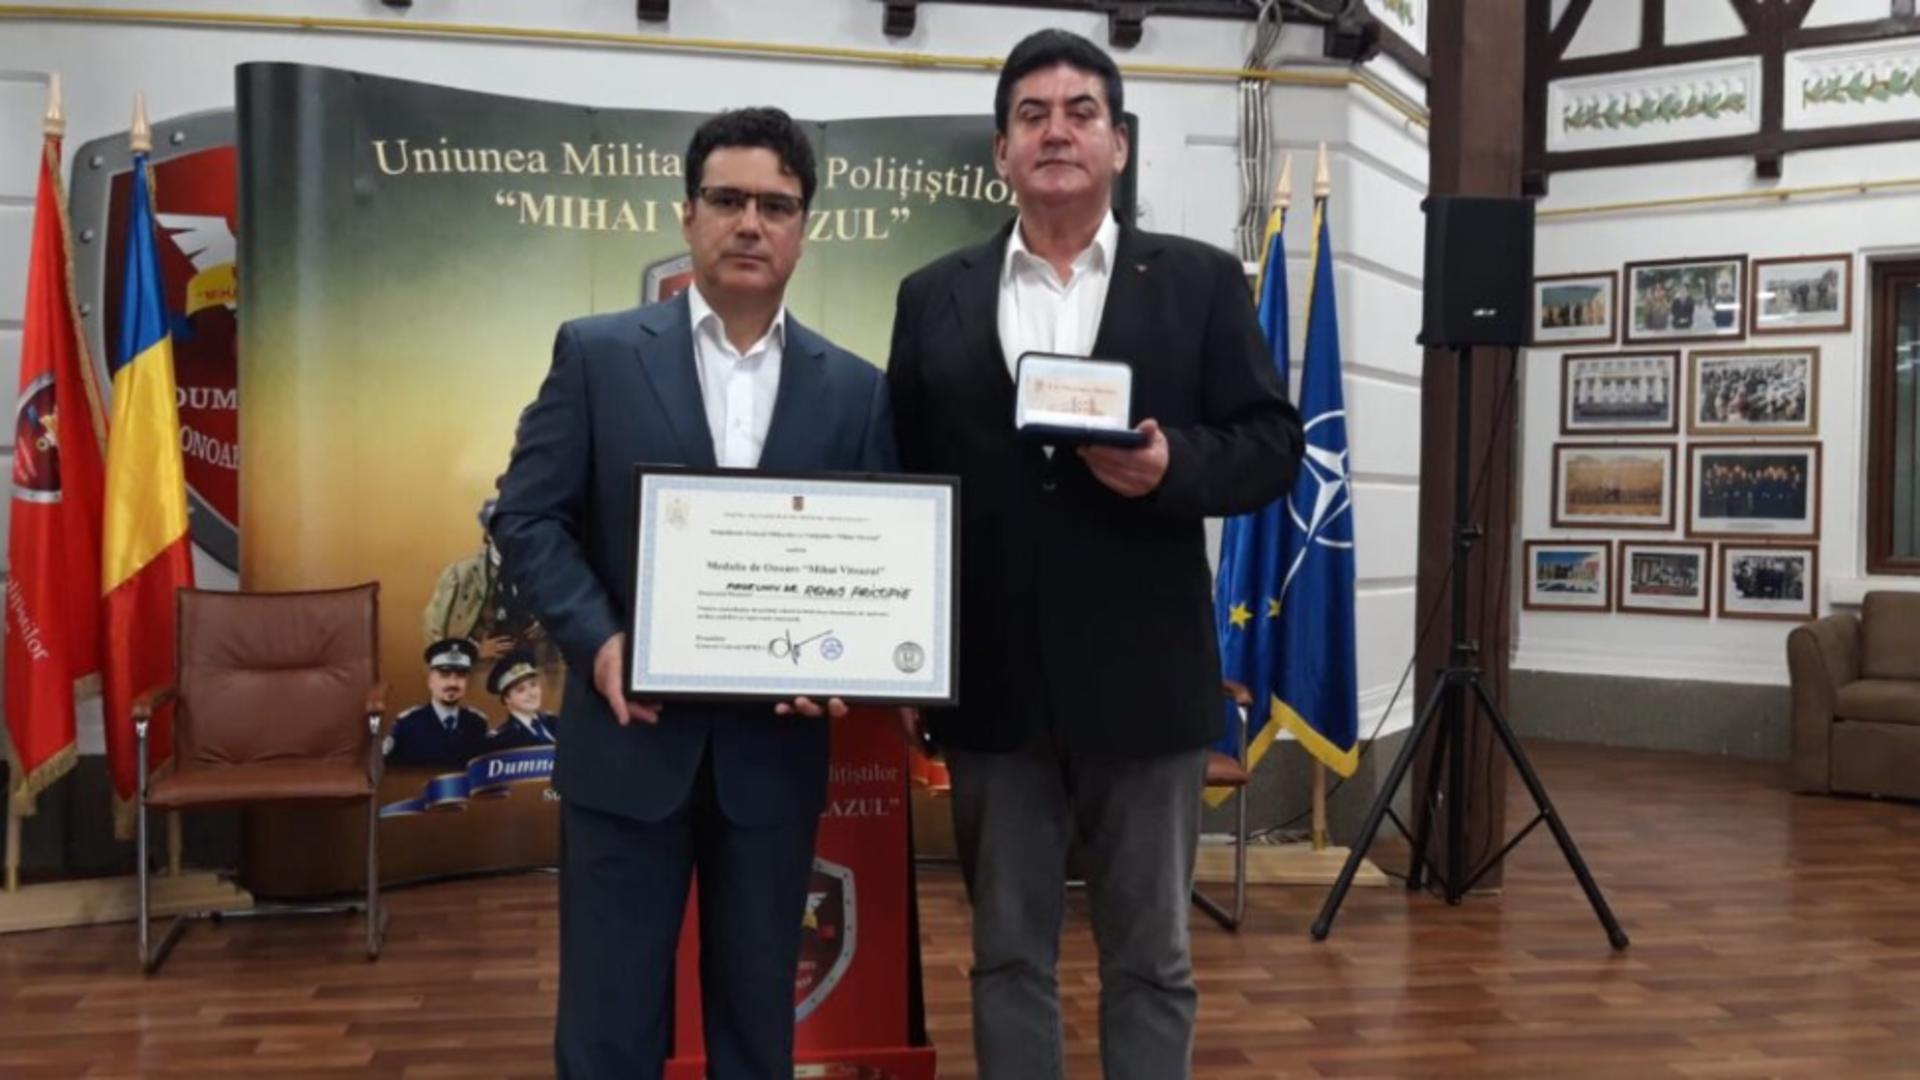 Diploma și medalia de onoare a UMPMV, conferite fostului ministru al Educației Remus Pricopie